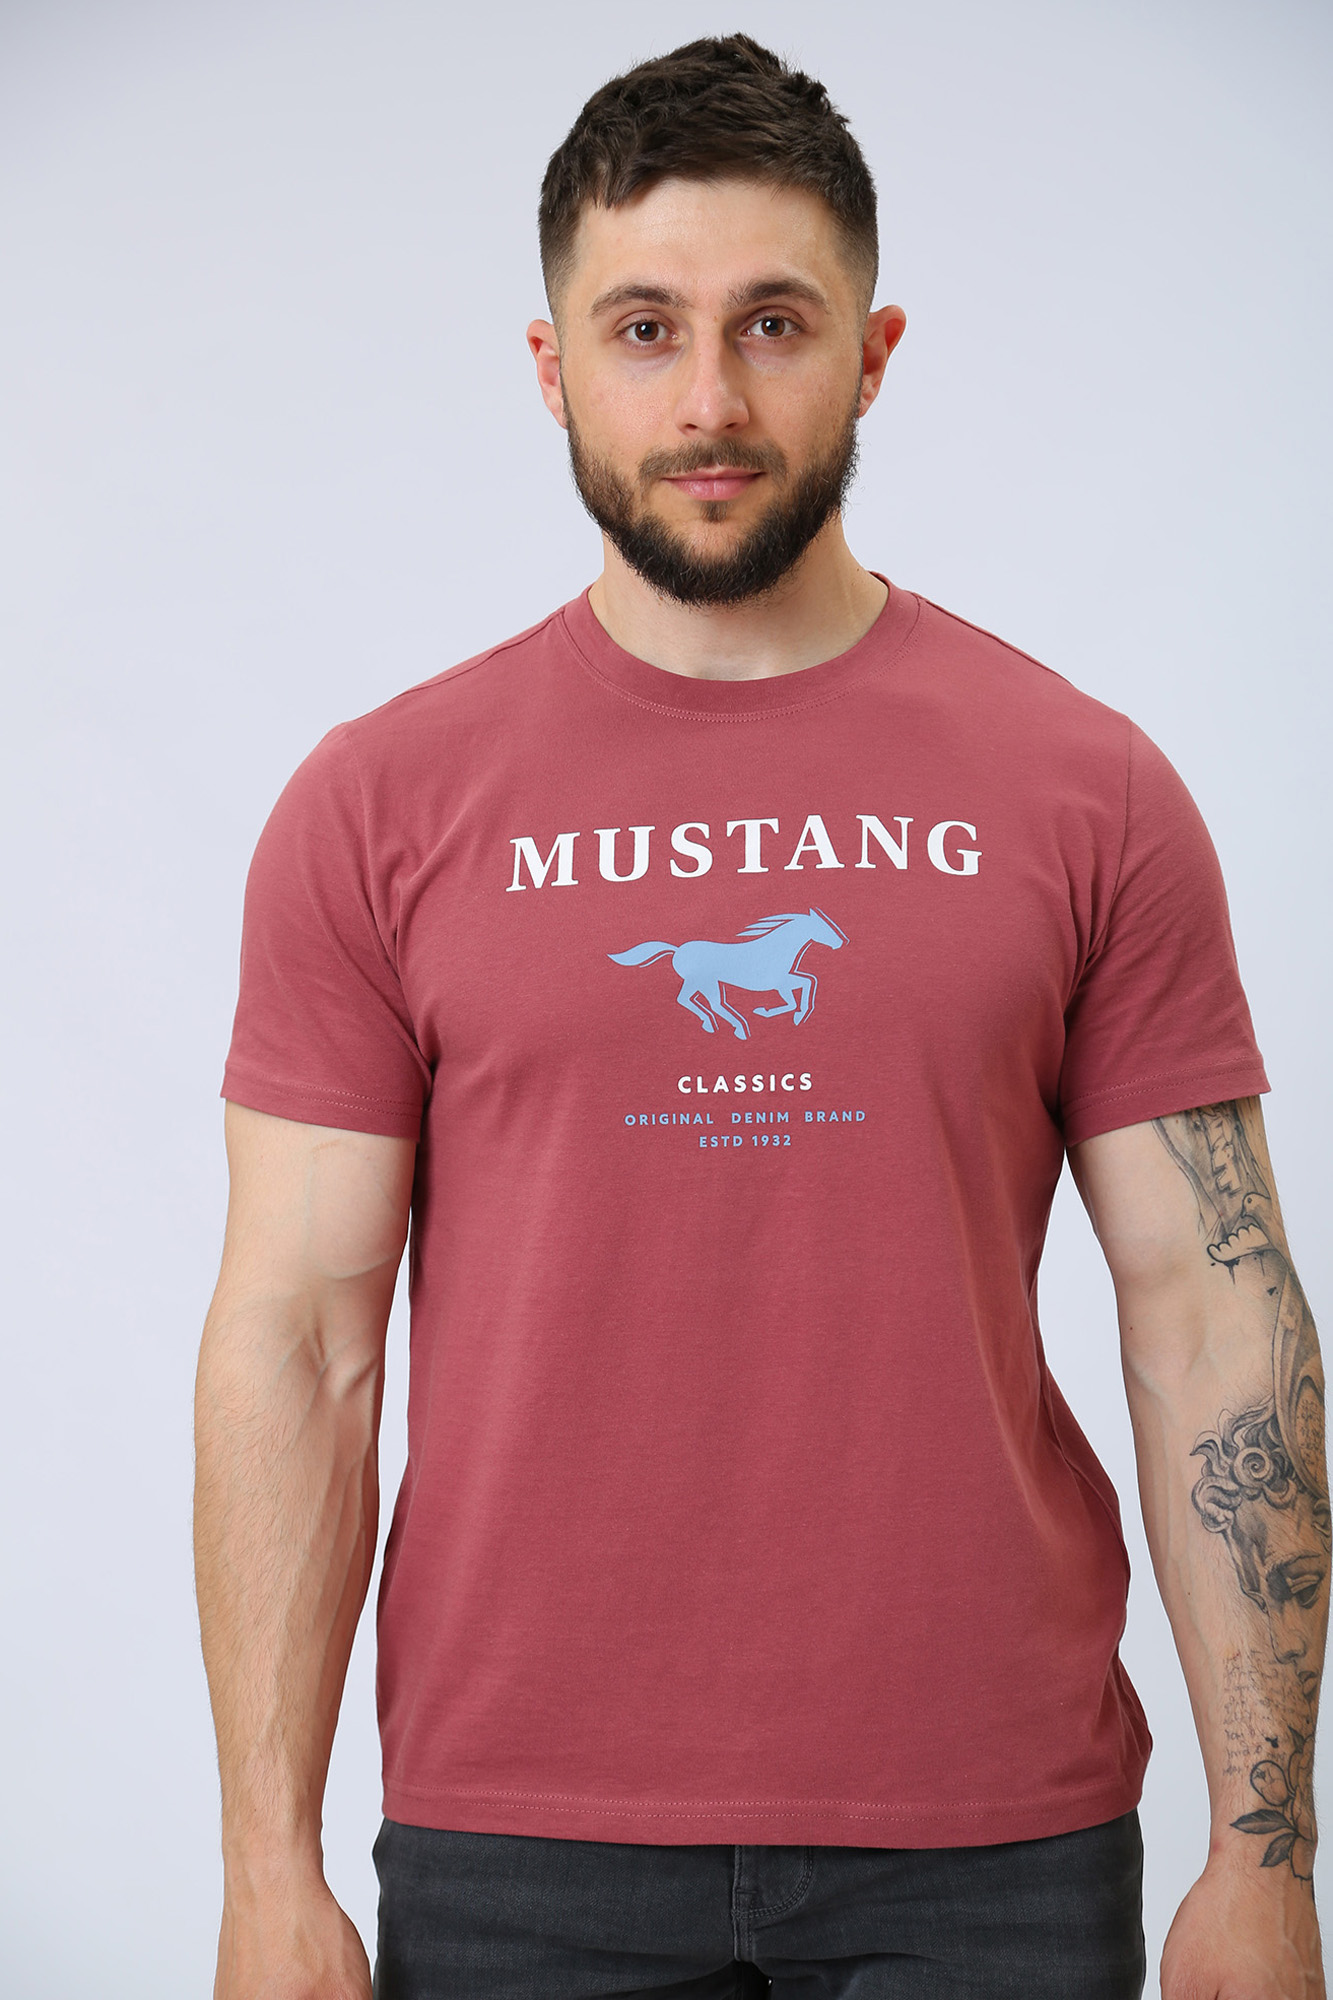 Красный алекс. Футболка Mustang. 1013540-8265 Мустанг футболка. Футболки Mustang Россия. Футболка Мустанг мужская купить.